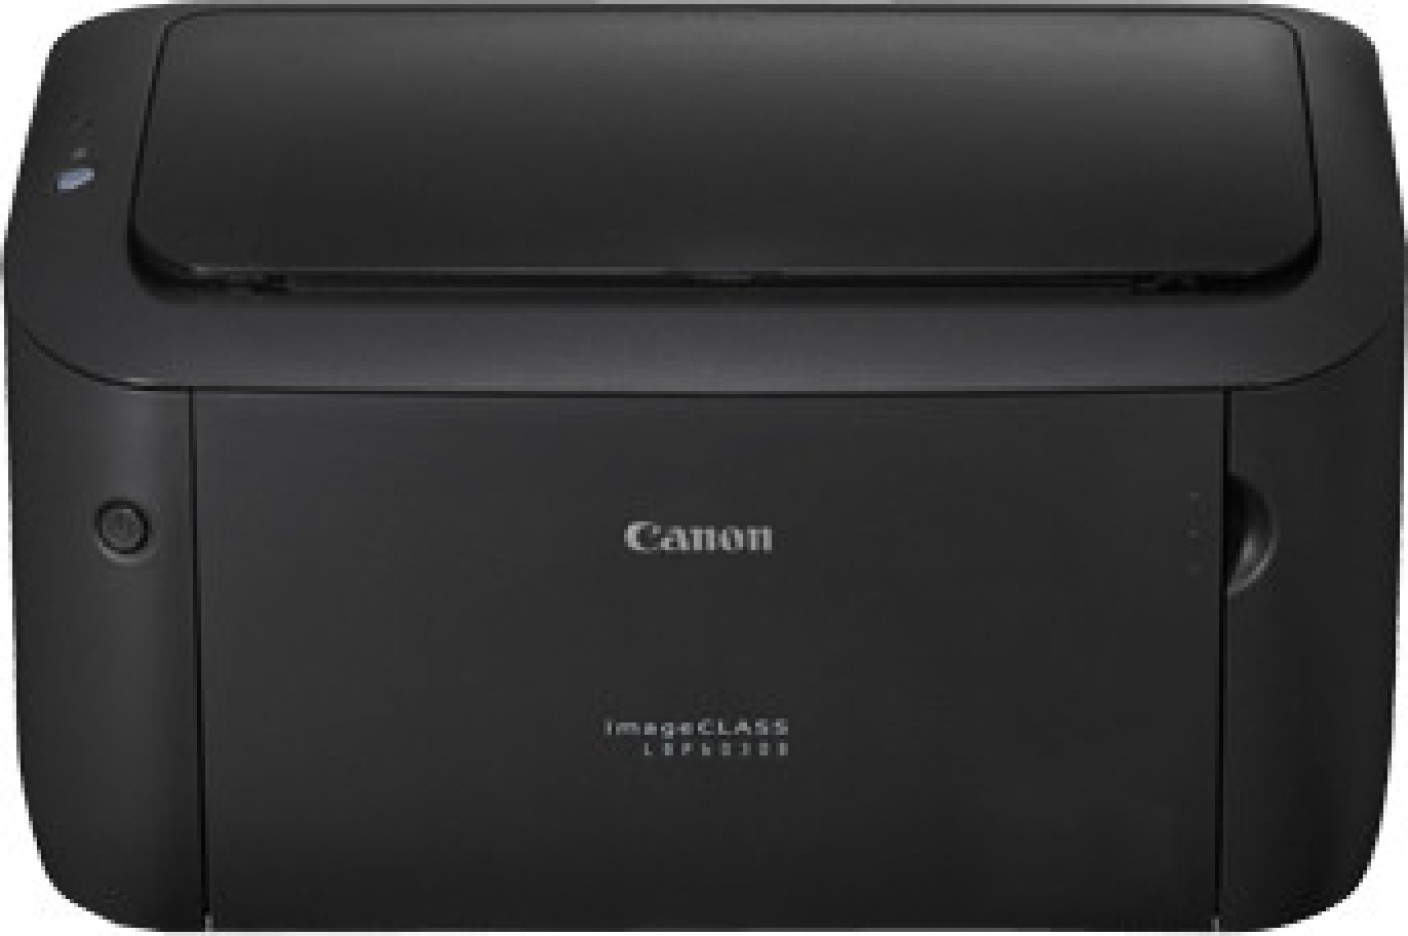 برنامج تعريف طابعة Canon LBP6030b لويندوز 7/8/10 وماك ...